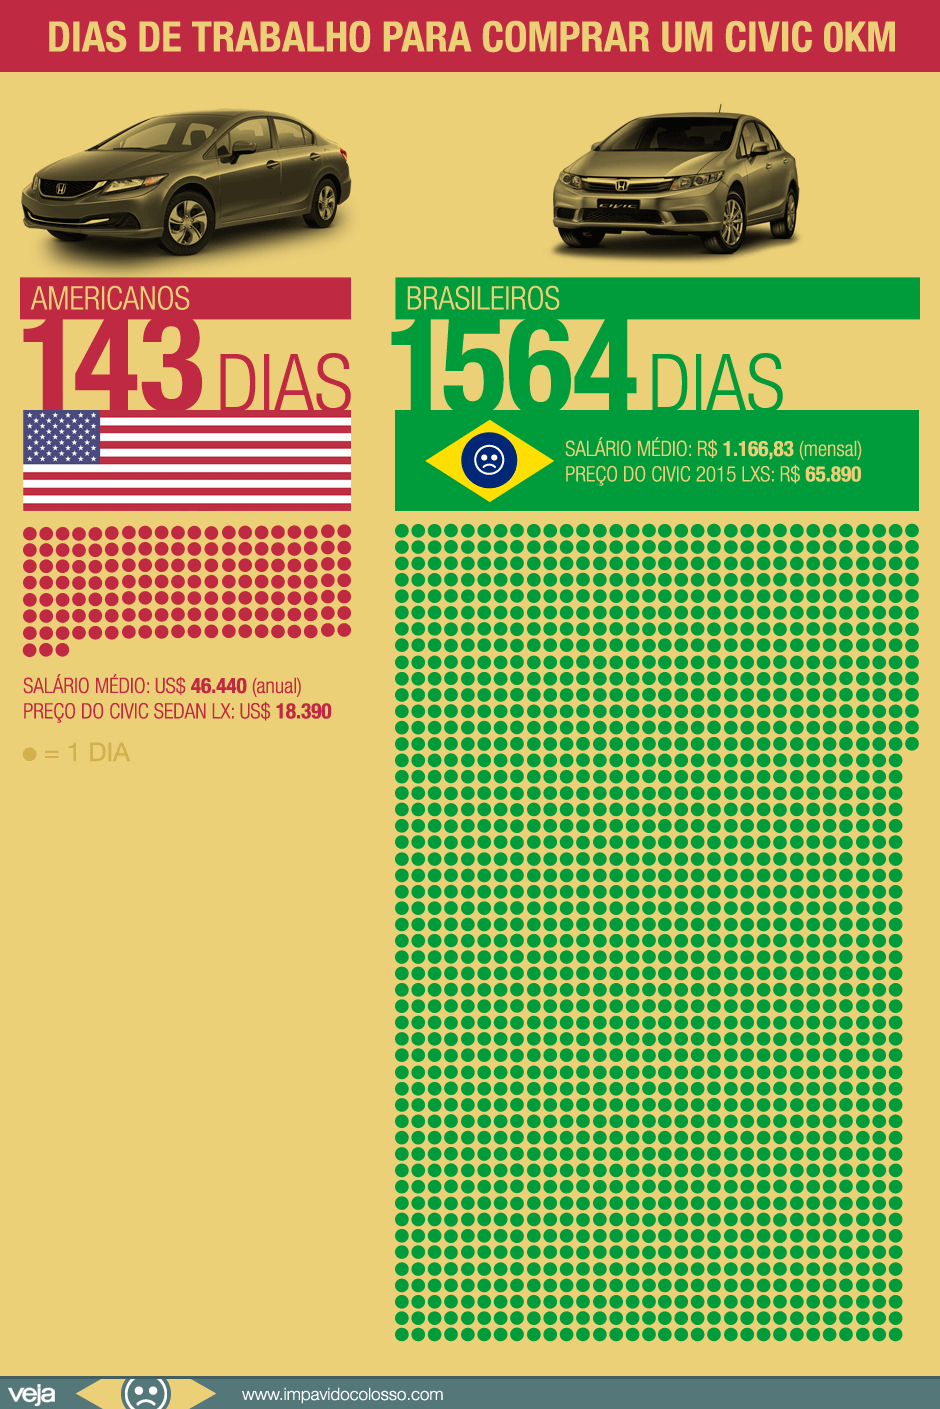 Para comprar um Civic novo,  brasileiros têm de trabalhar 11 vezes mais que americanos